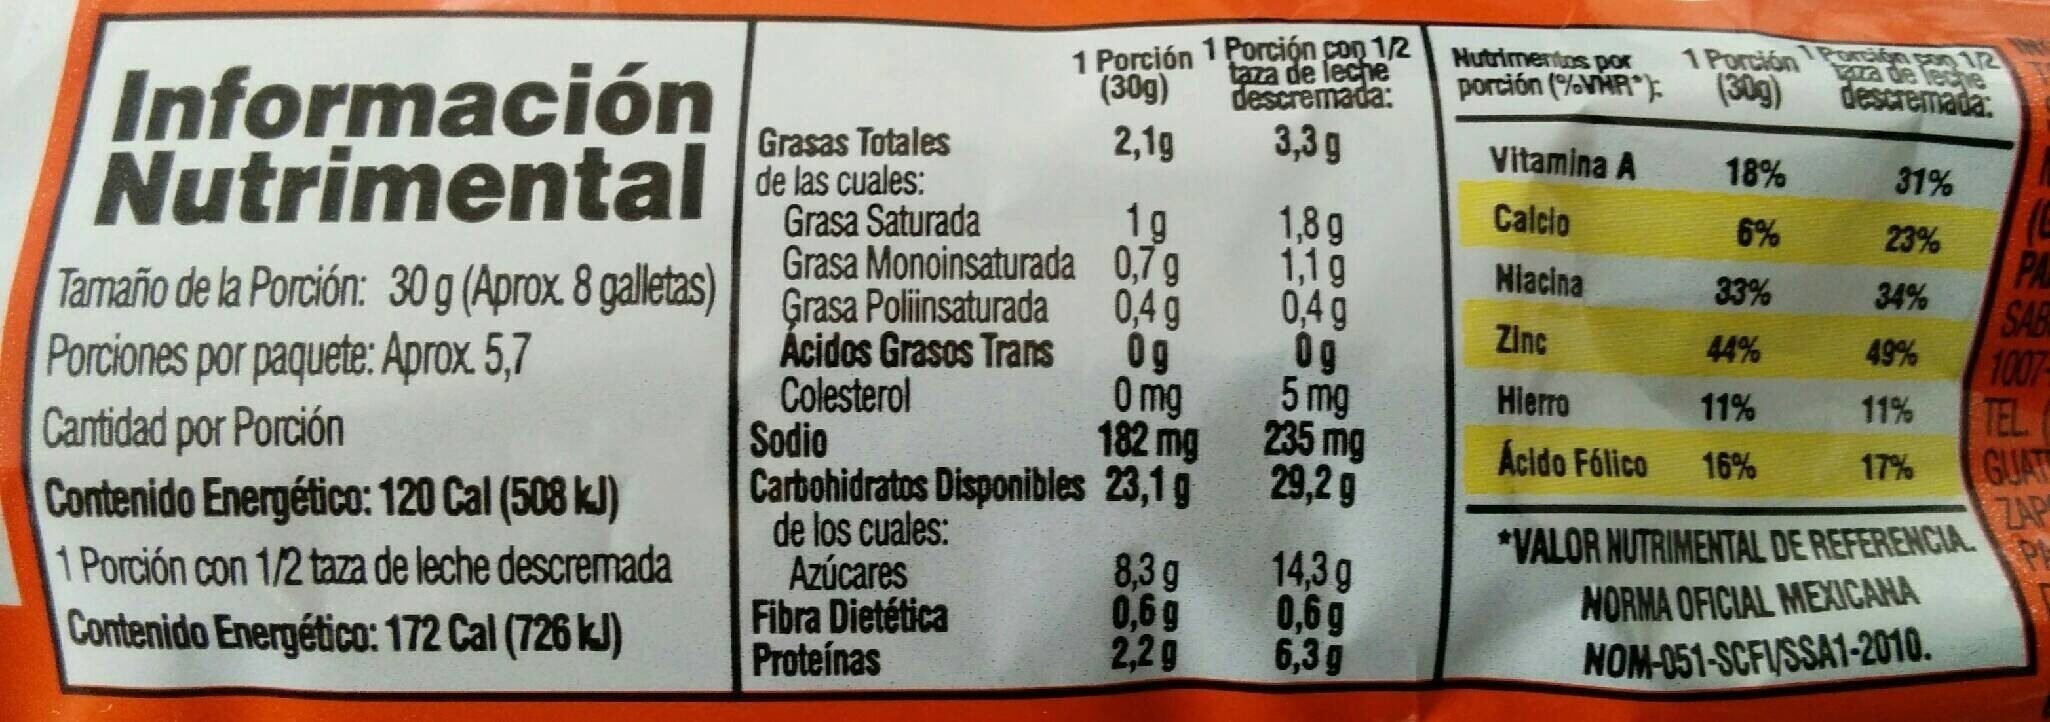 Galletas Marias 170 GRS - Información nutricional